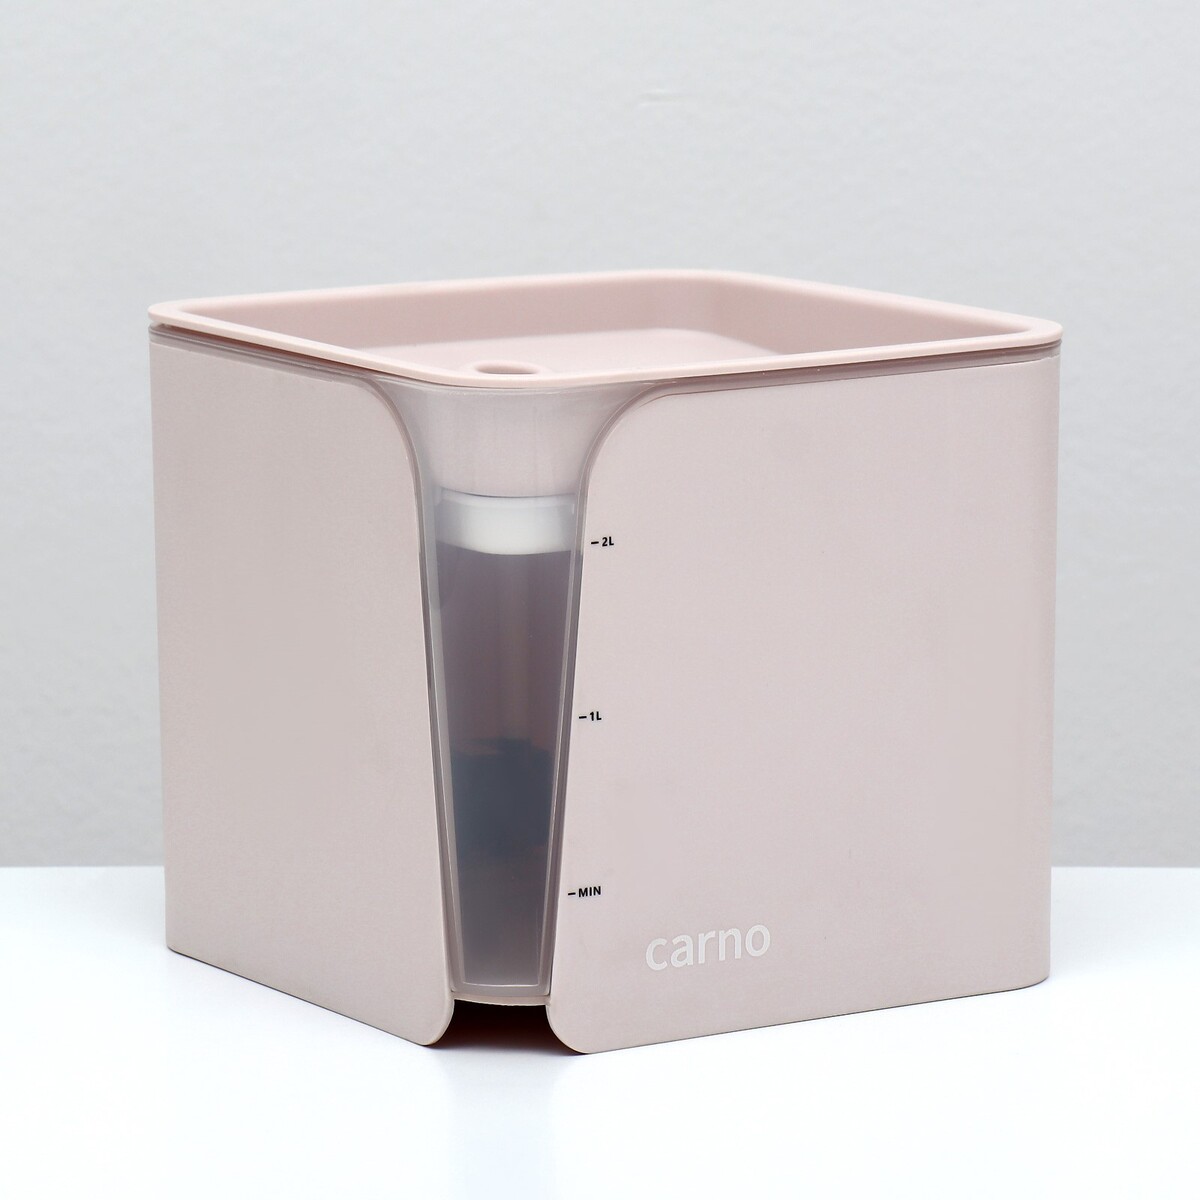 Фонтанчик для животных carno, 2 л, с датчиком воды и фильтром, 18х16 см 2 л, розовый